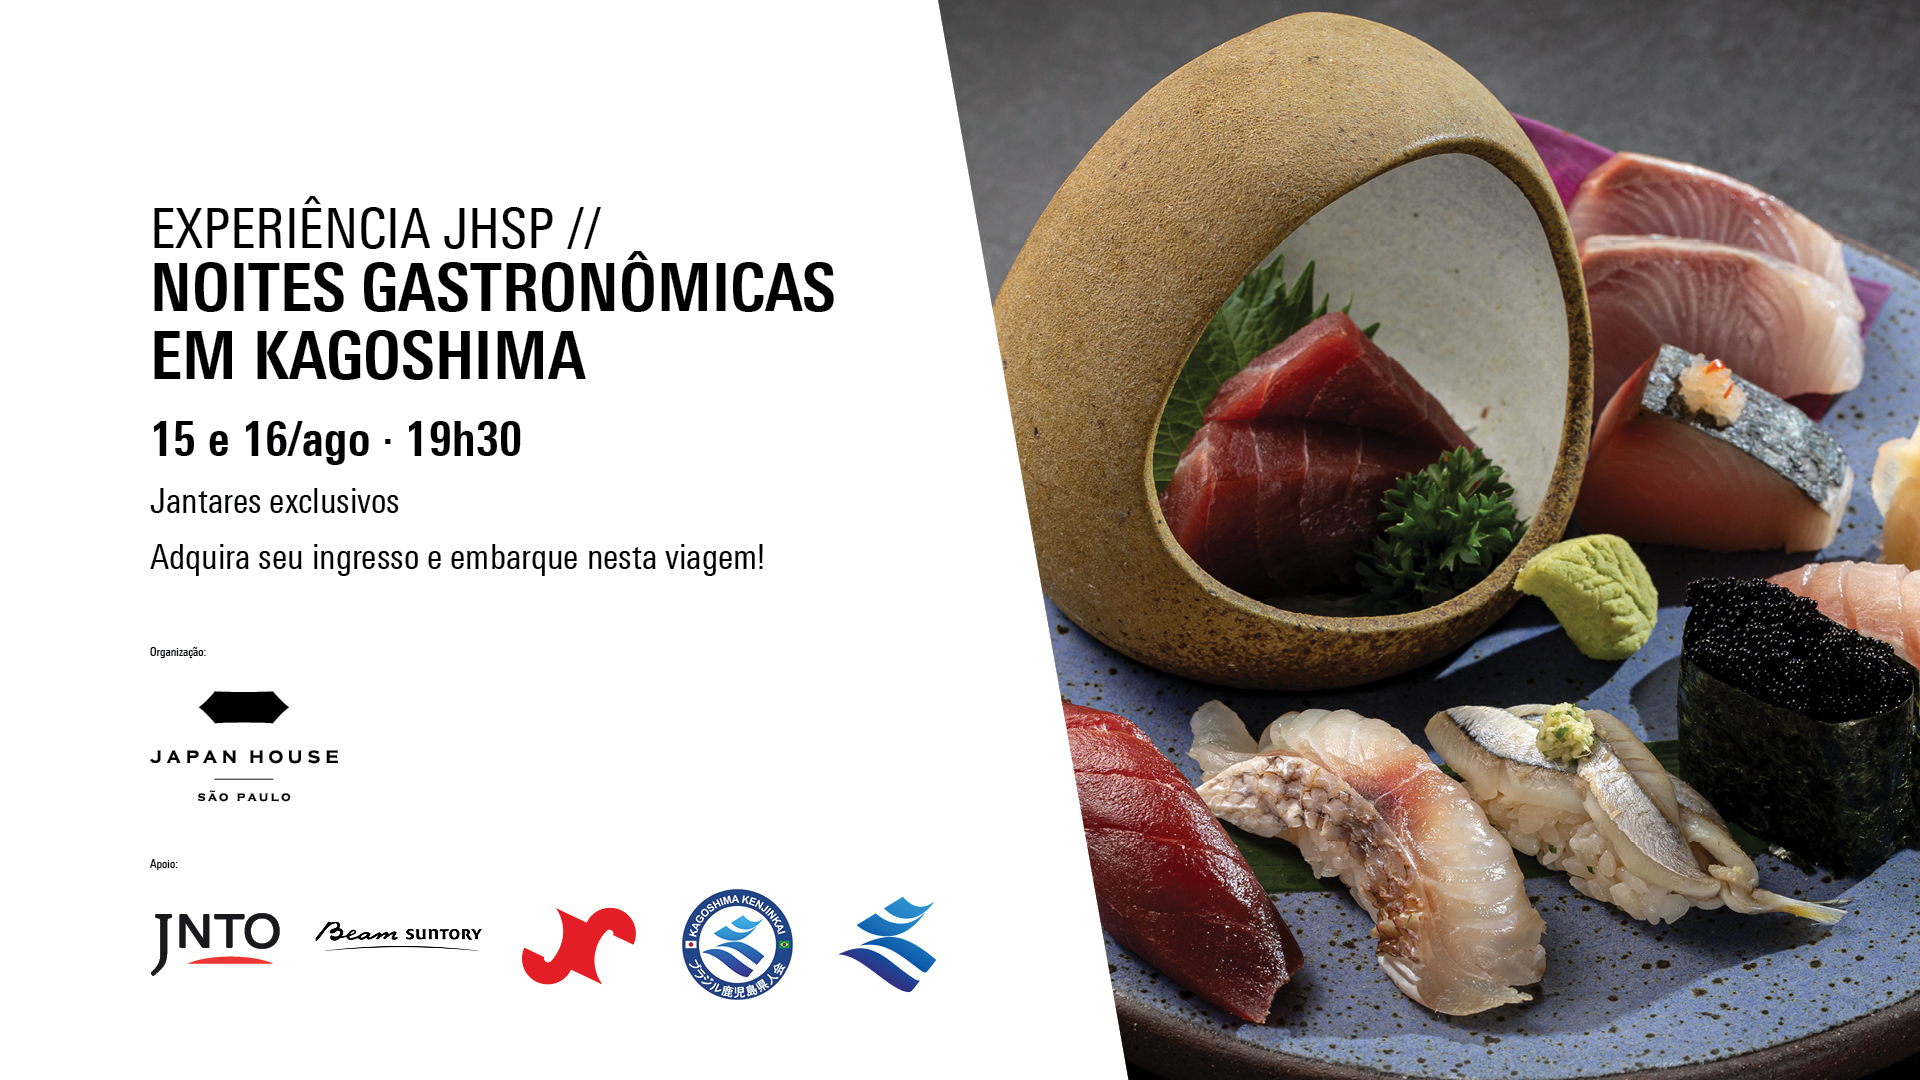 Experiência JHSP: Noites Gastronômicas em Kagoshima